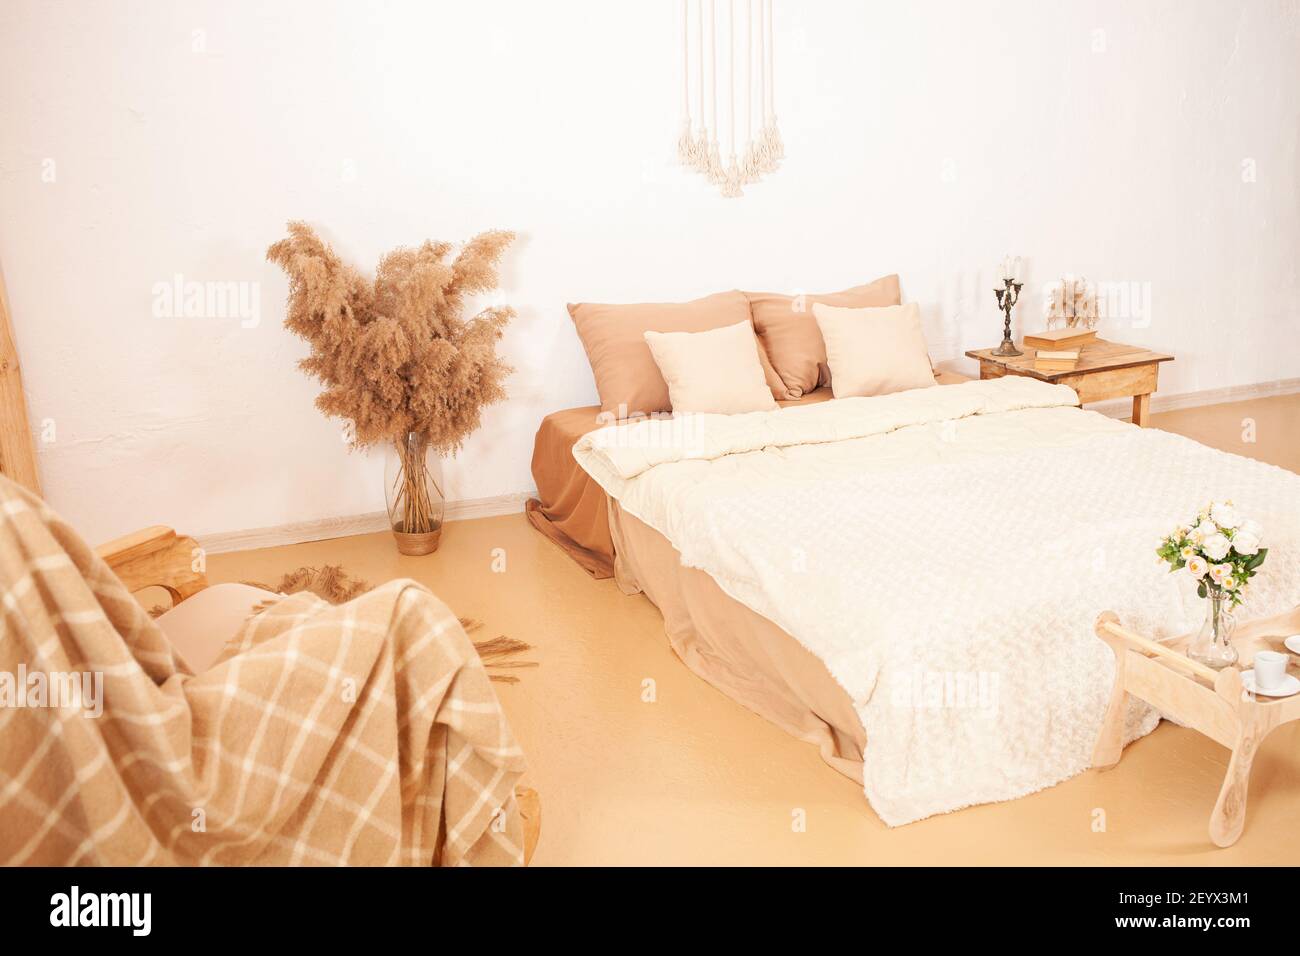 Interno beige marrone bianco. Camera da letto di tonalità chiare. Una sedia  basculante con una plaid, uno specchio in una cornice di legno, fiori  pampas pianta. Decorazioni per t Foto stock 